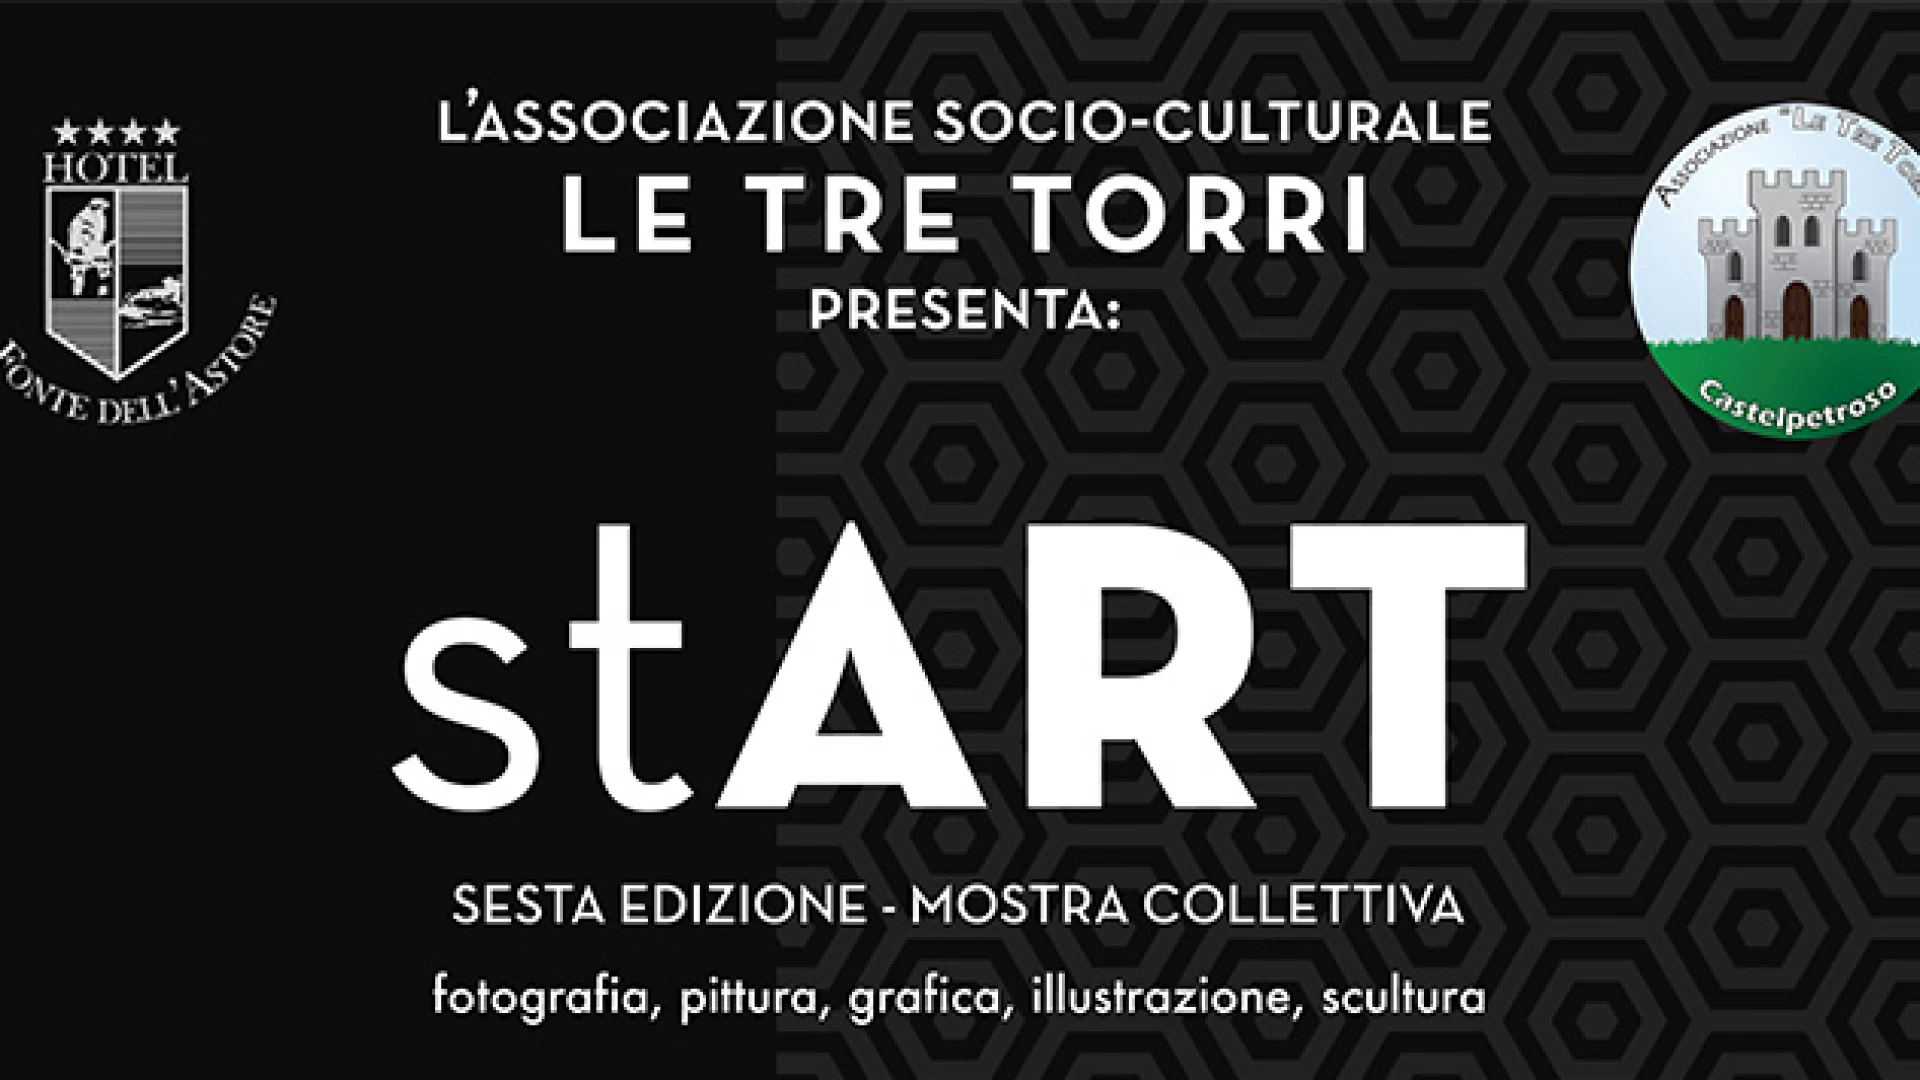 Castelpetroso: Una giornata all'insegna dell'arte per l'associazione Le Tre Torri con la mostra Start. Le arti visive di giovani artisti molisani in esposizione.